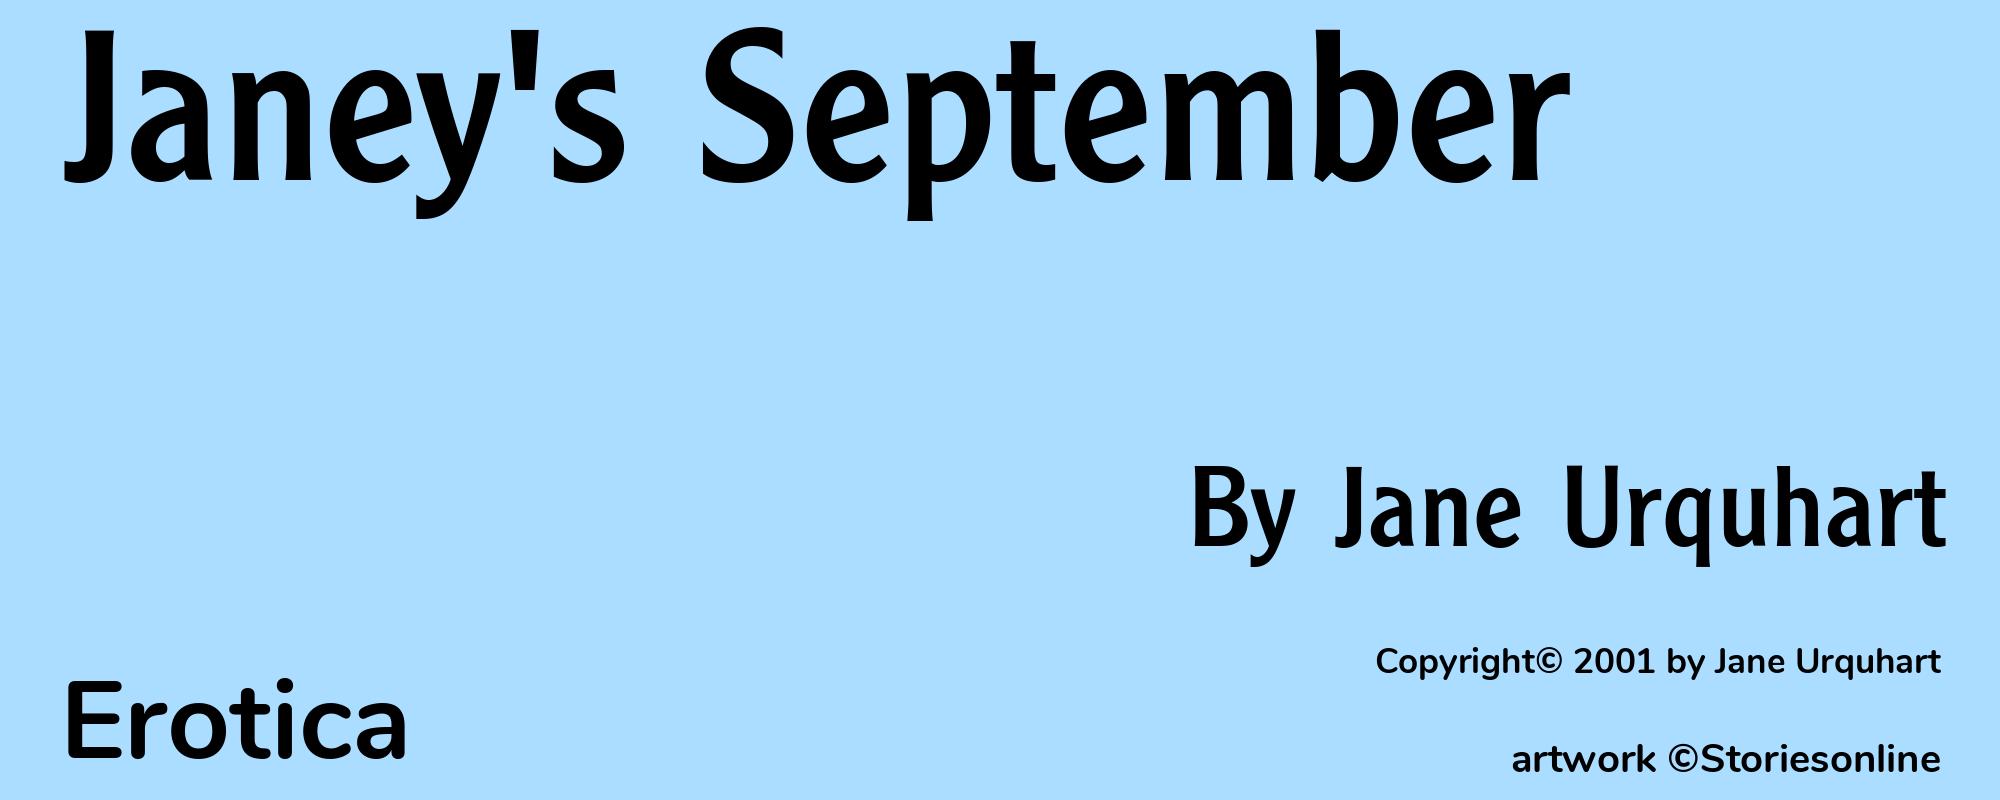 Janey's September - Cover